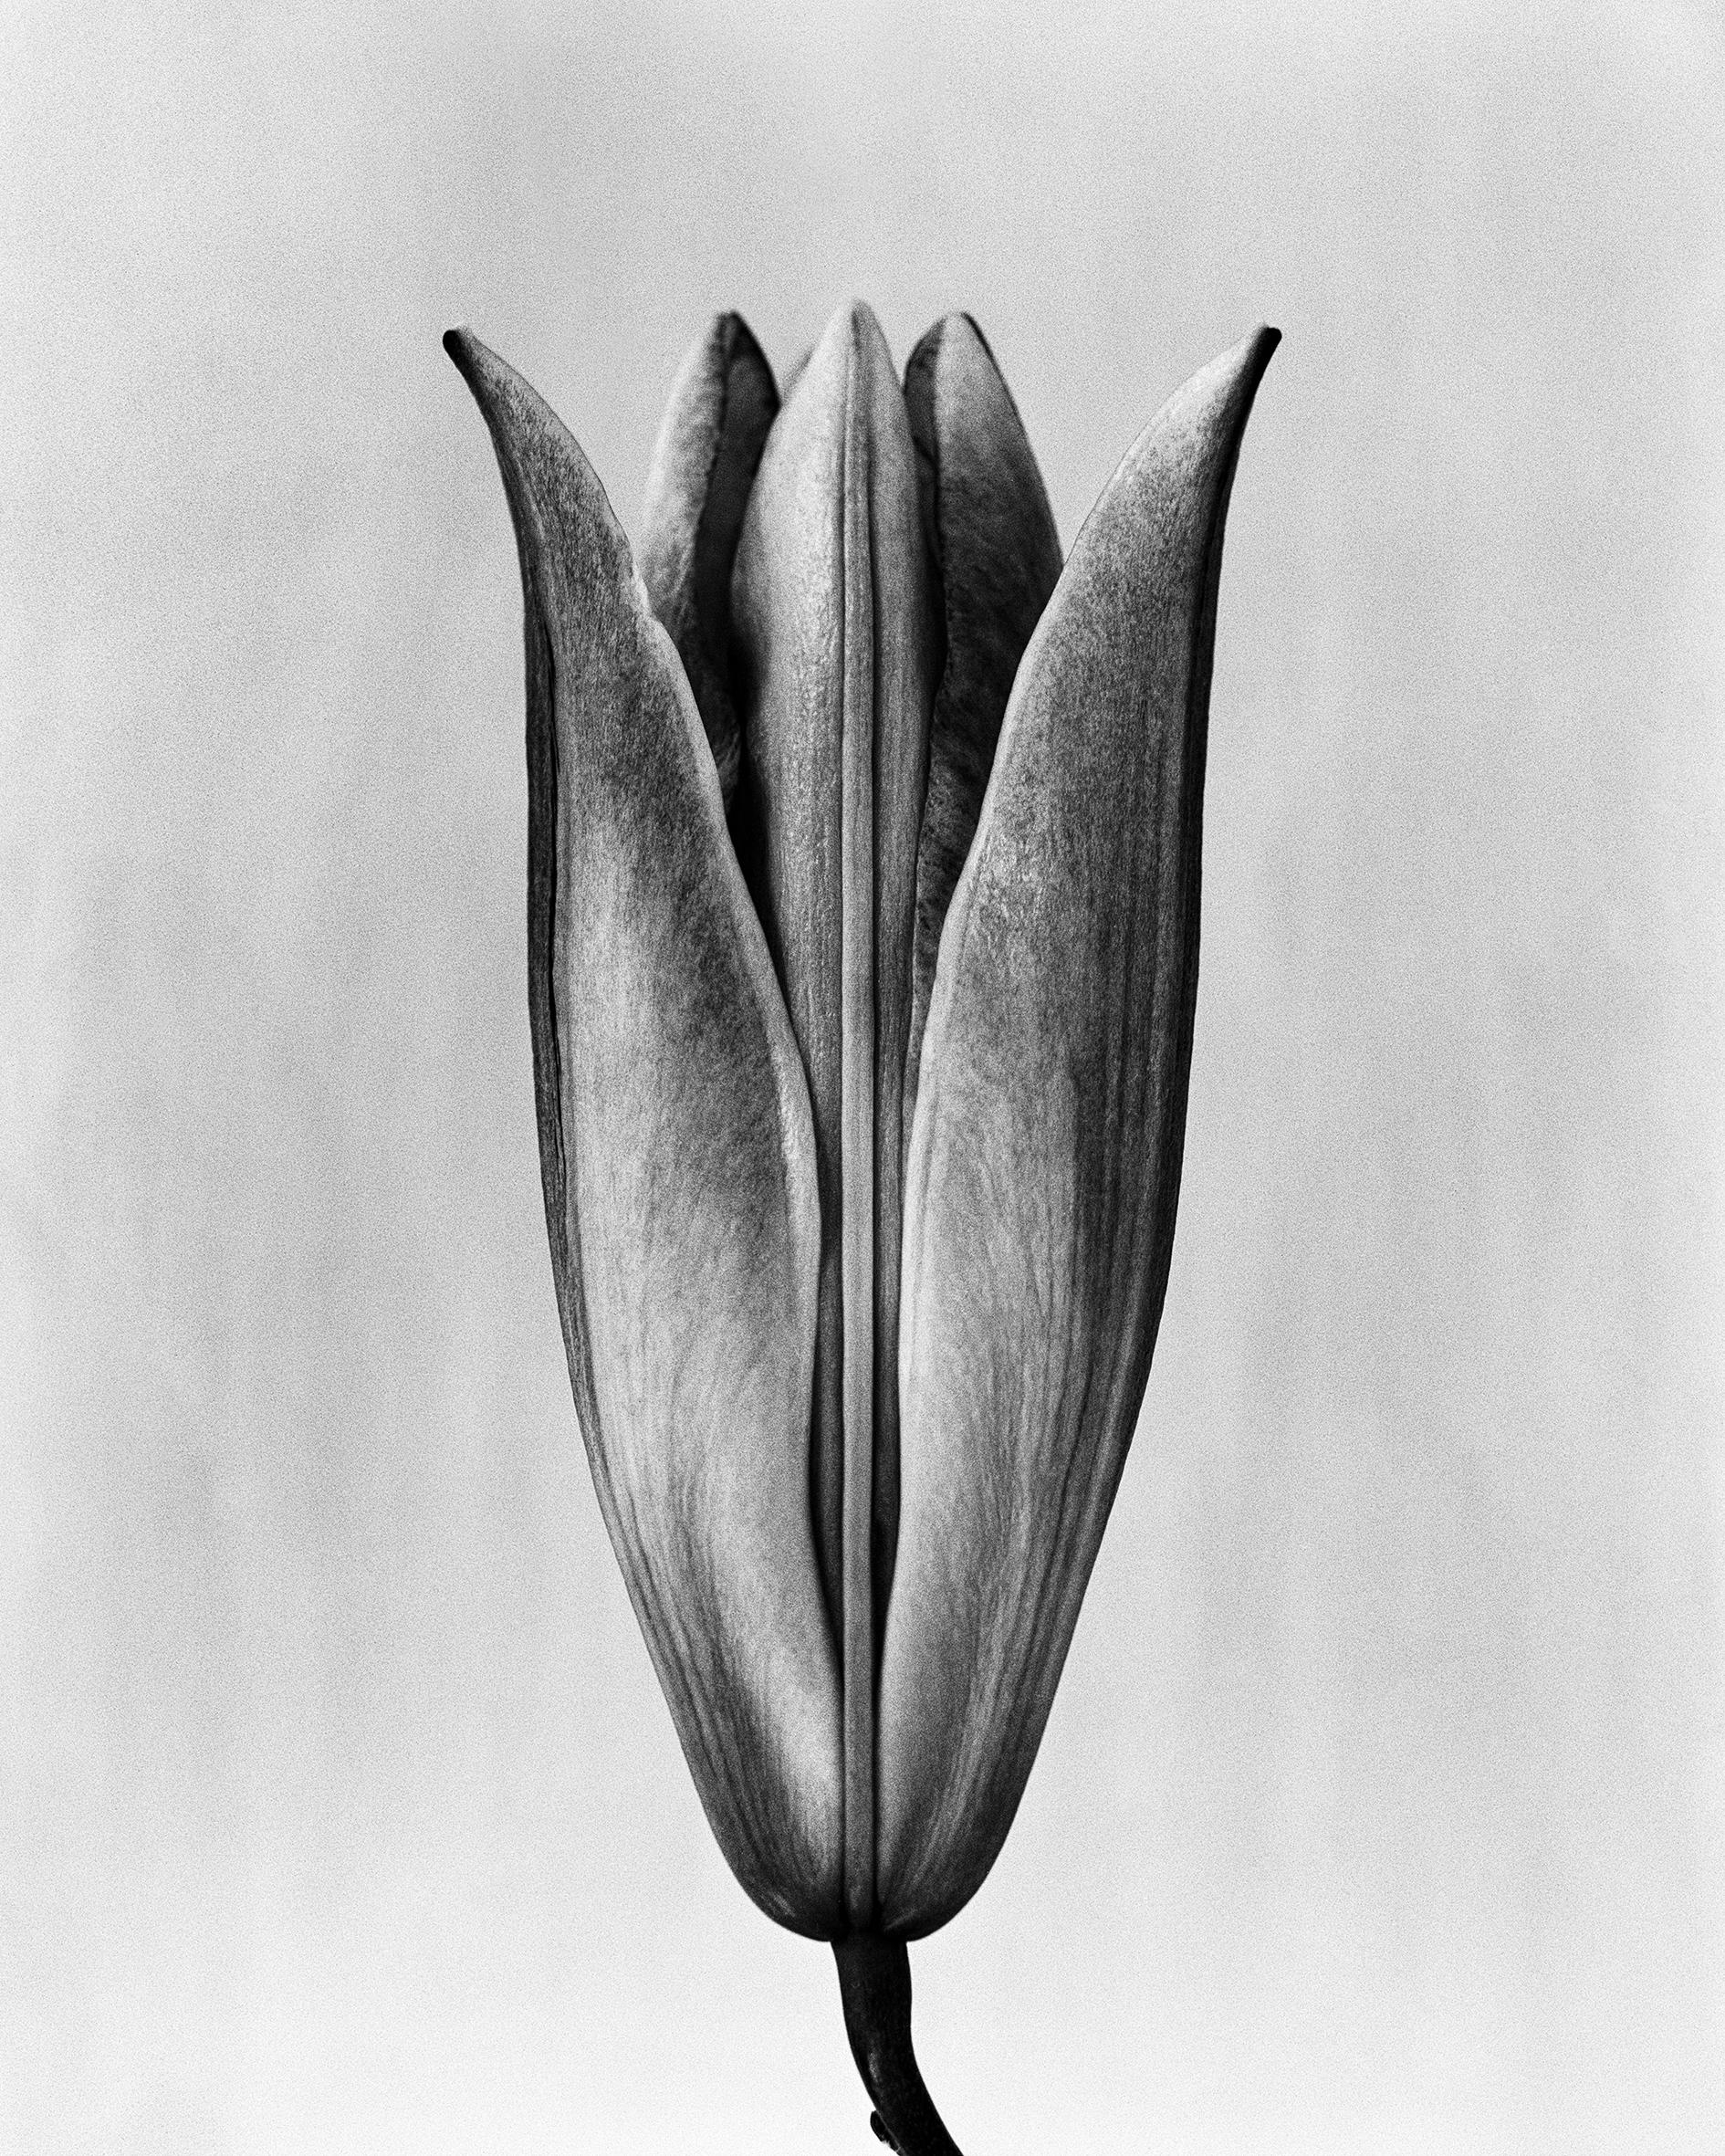 Lily '23 photographie florale analogique en noir et blanc édition de 10 exemplaires